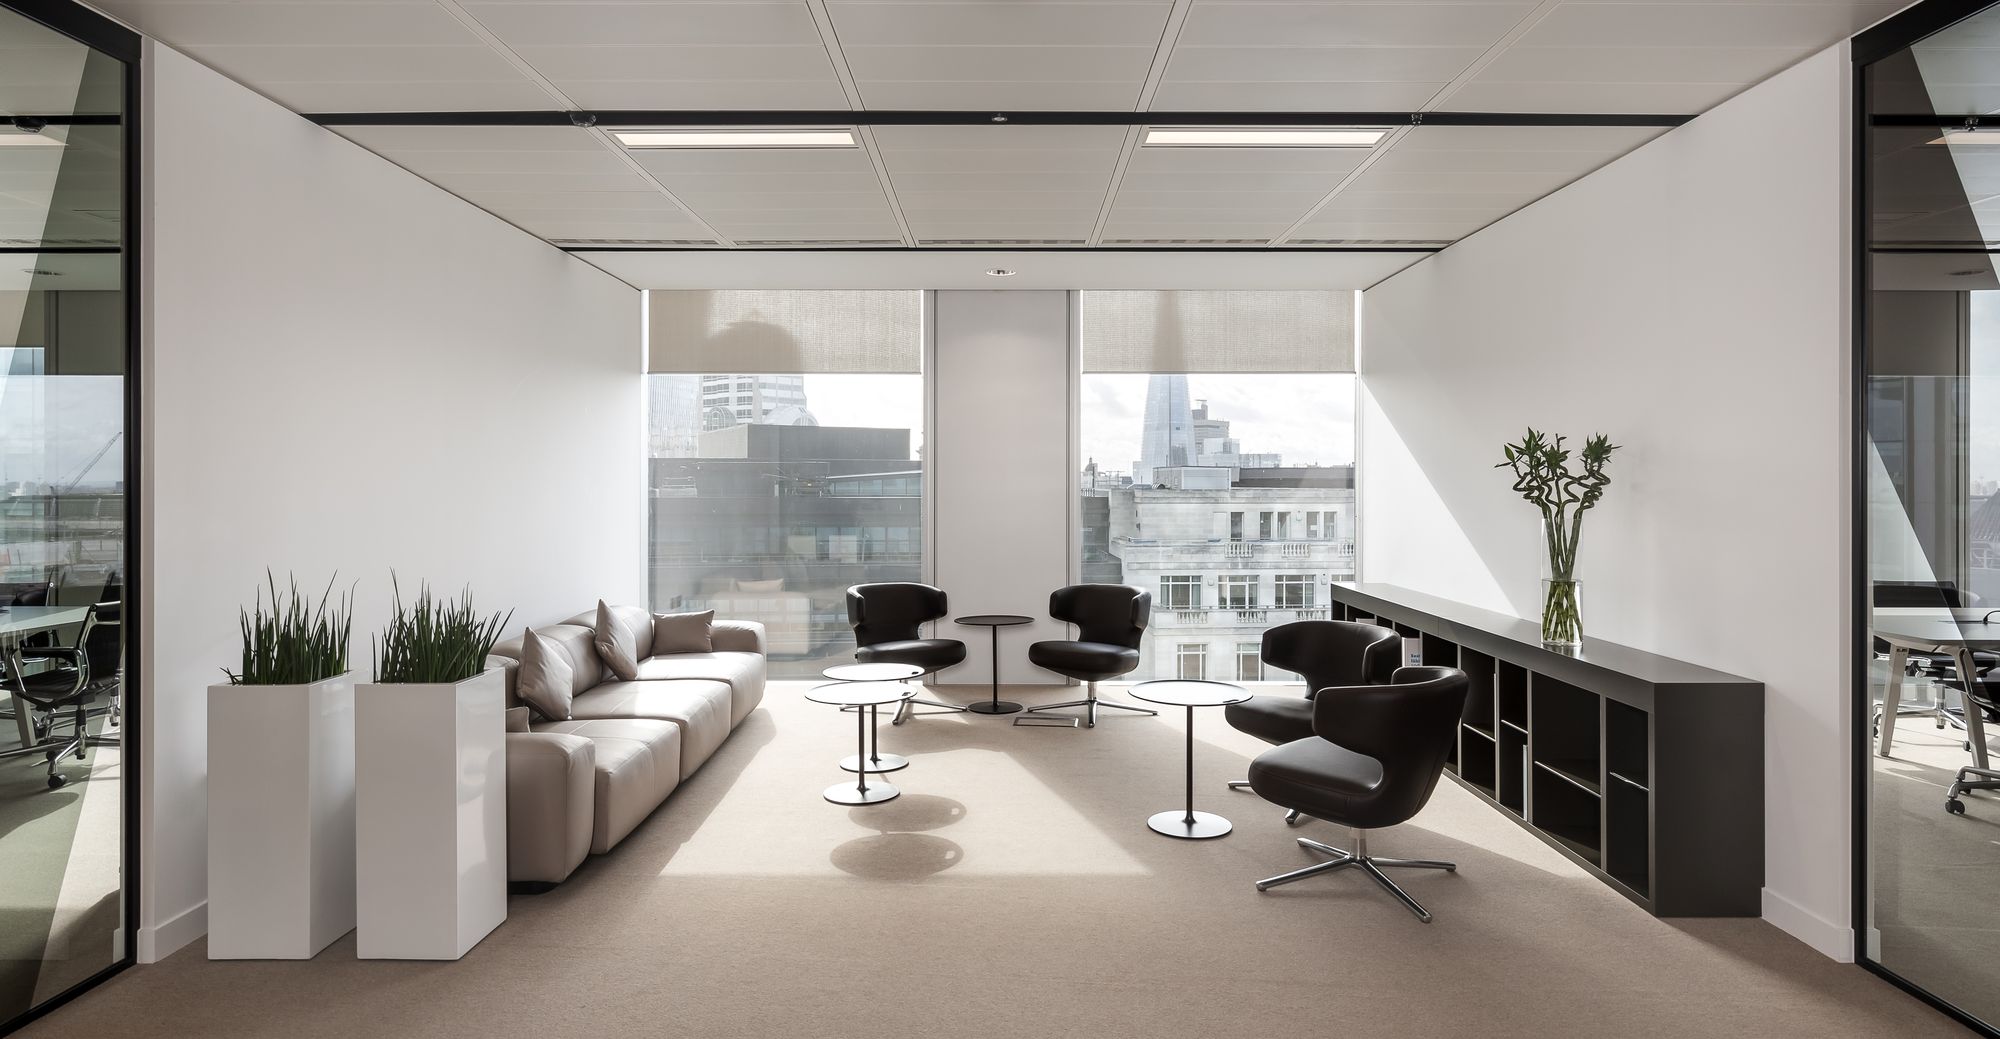 图片[2]|伦敦LHV银行办公室|ART-Arrakis | 建筑室内设计的创新与灵感